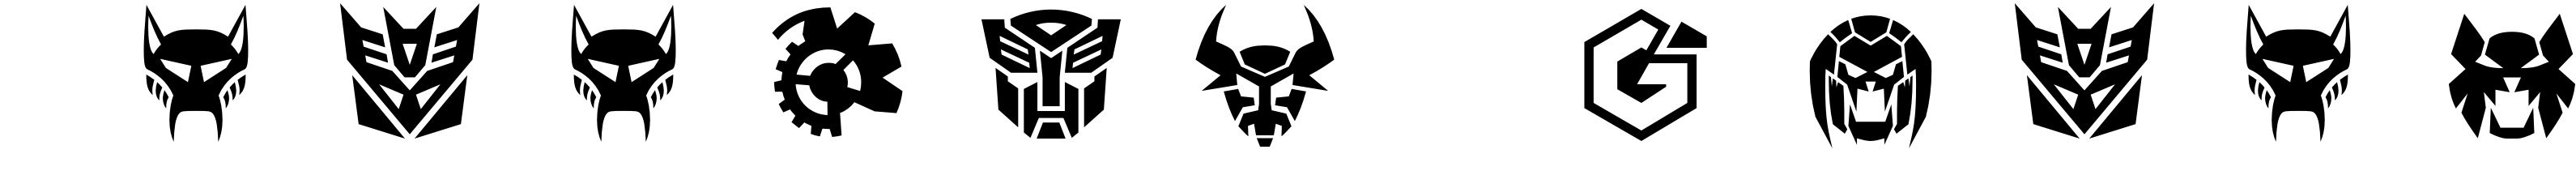 Robofan Symbol